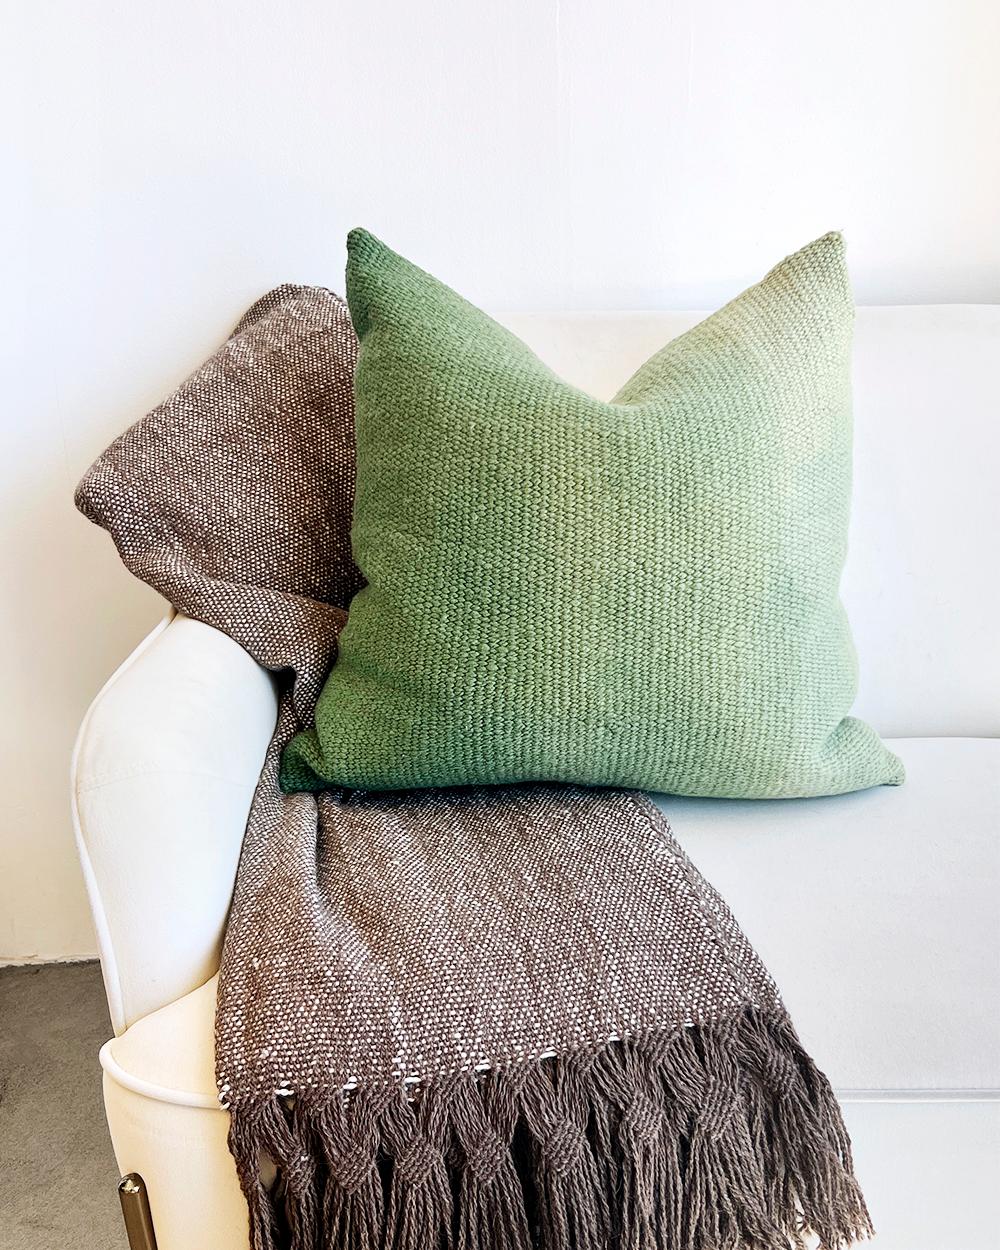 Eine luxuriöse Decke für Ihr Zuhause aus natürlicher Lama-Wolle und Seide. Diese handgefertigte Decke hat ein braun-weißes Geflecht mit braunen Fransen in einem doppelten Flechtmuster, das einzigartig ist und ins Auge fällt. Kombinieren Sie die